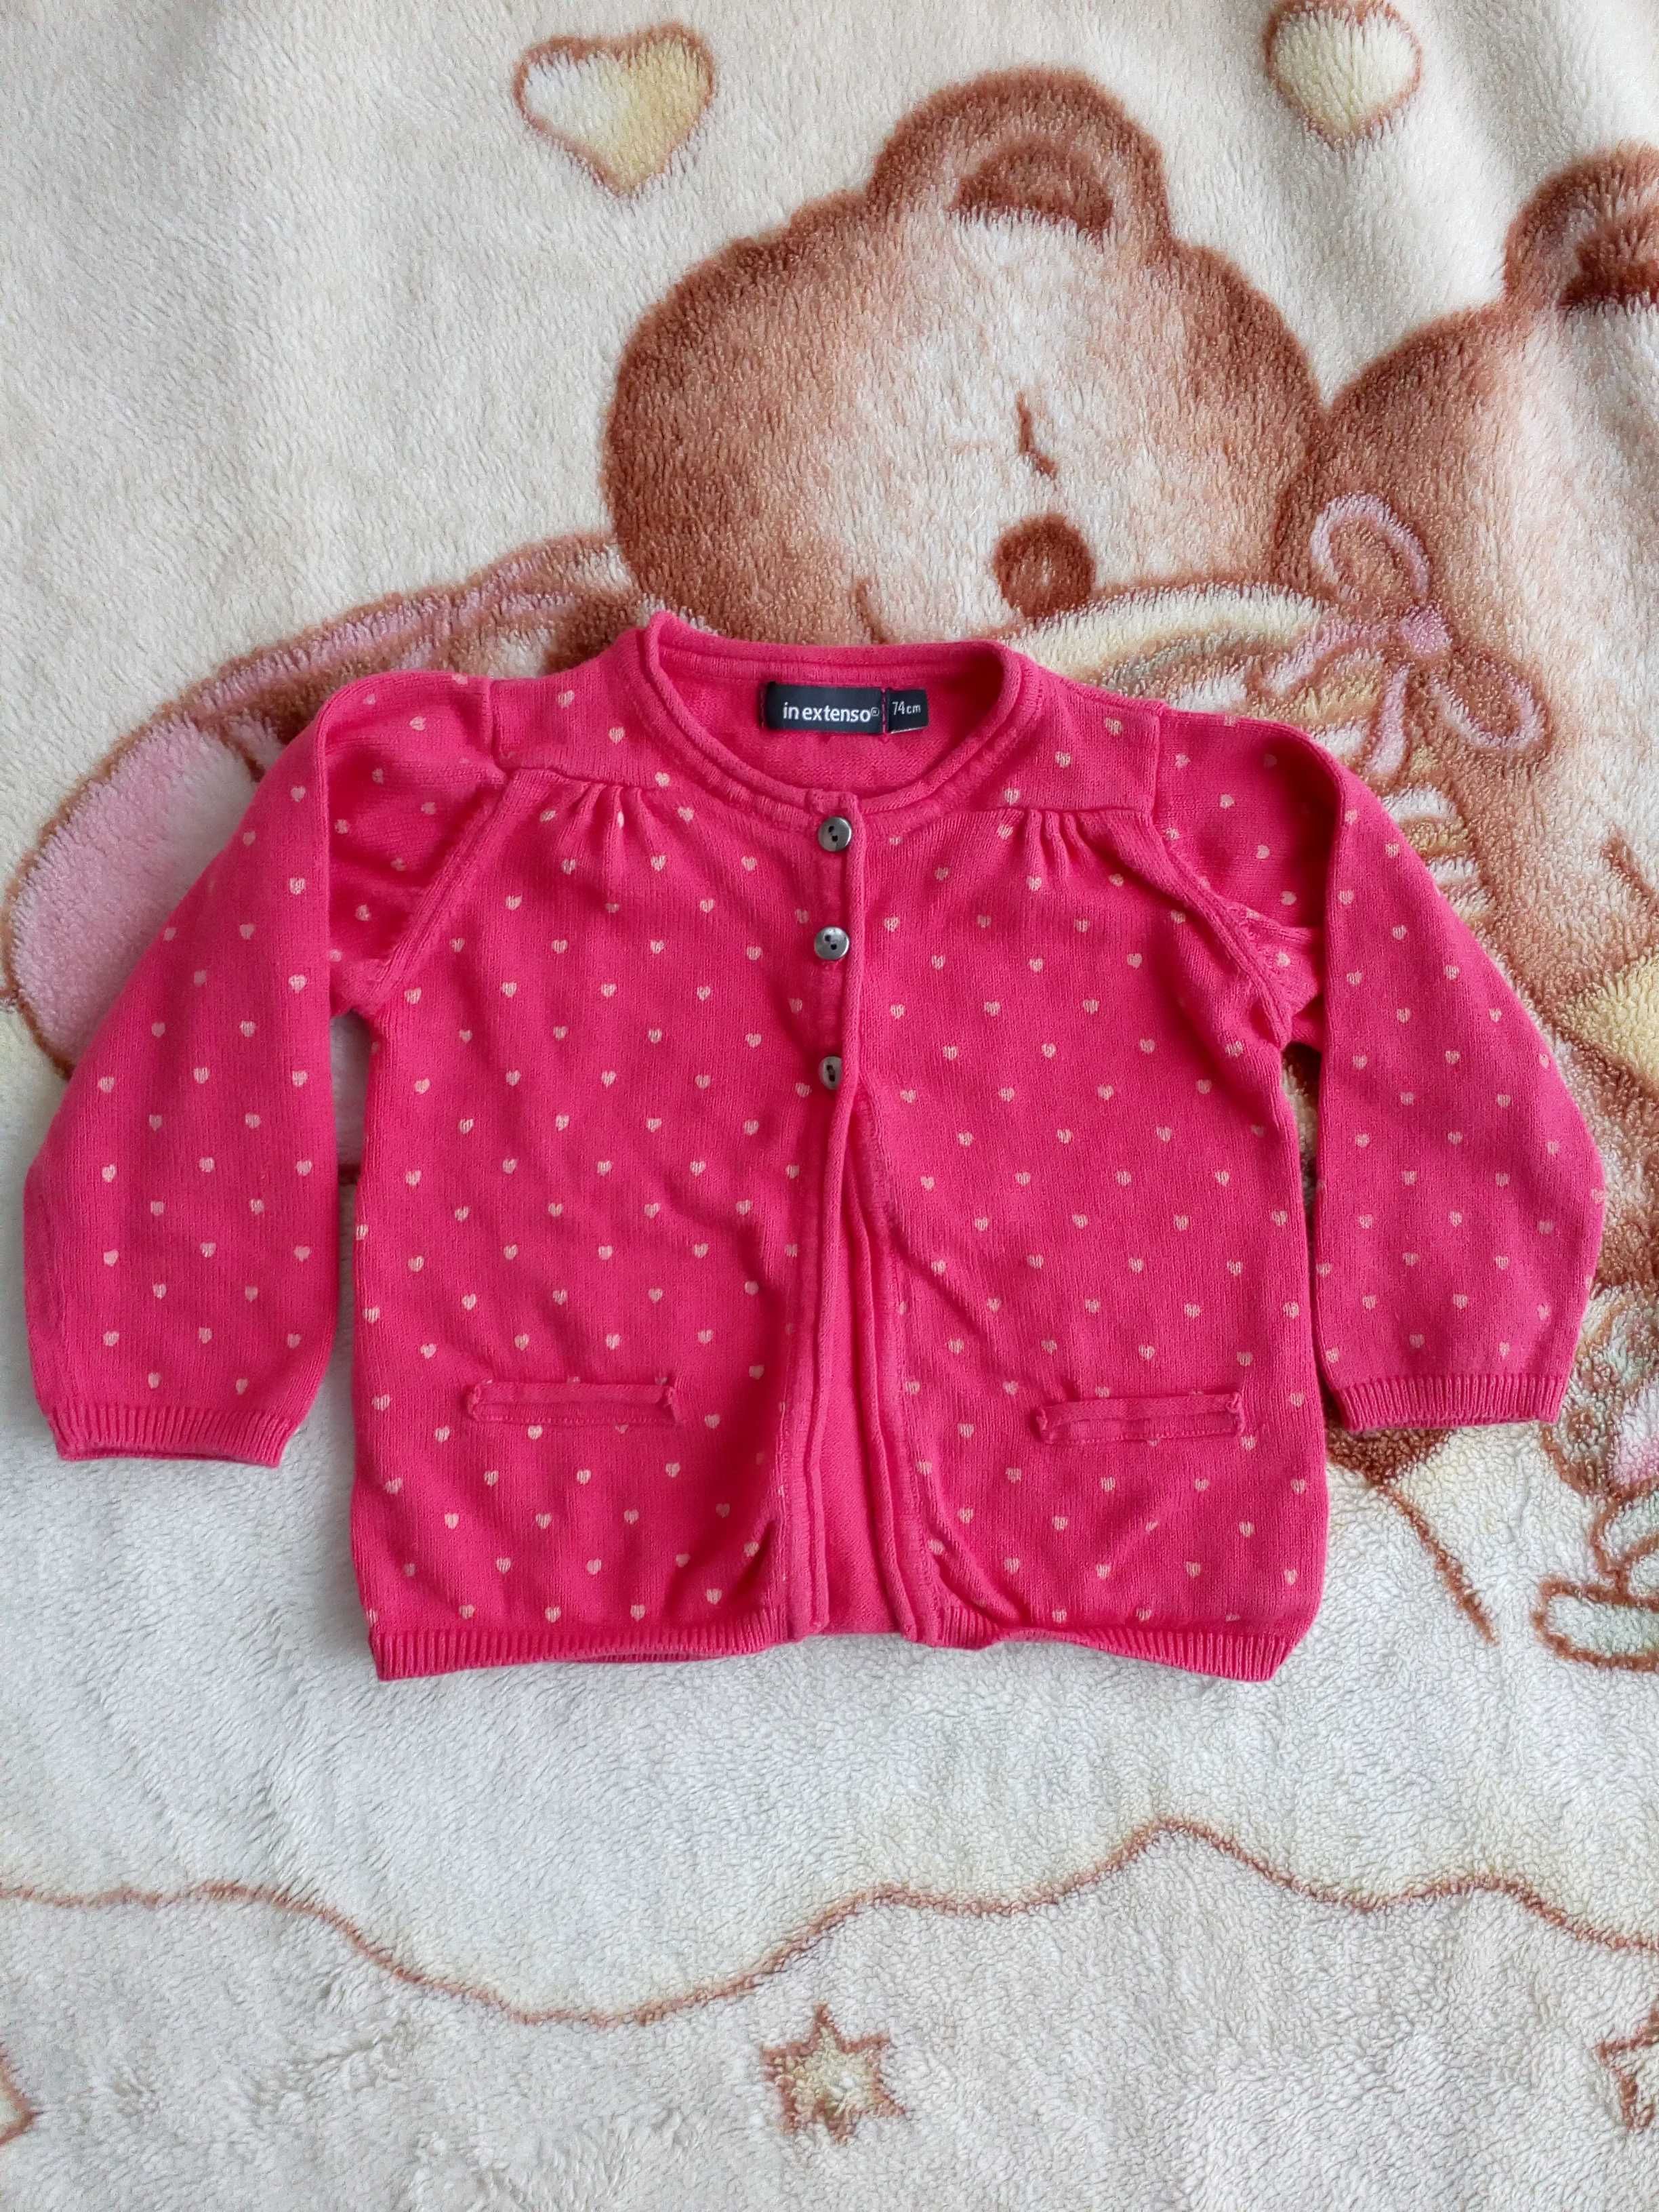 Różowy zapinany sweter sweterek w serca serduszka 74 jak nowy